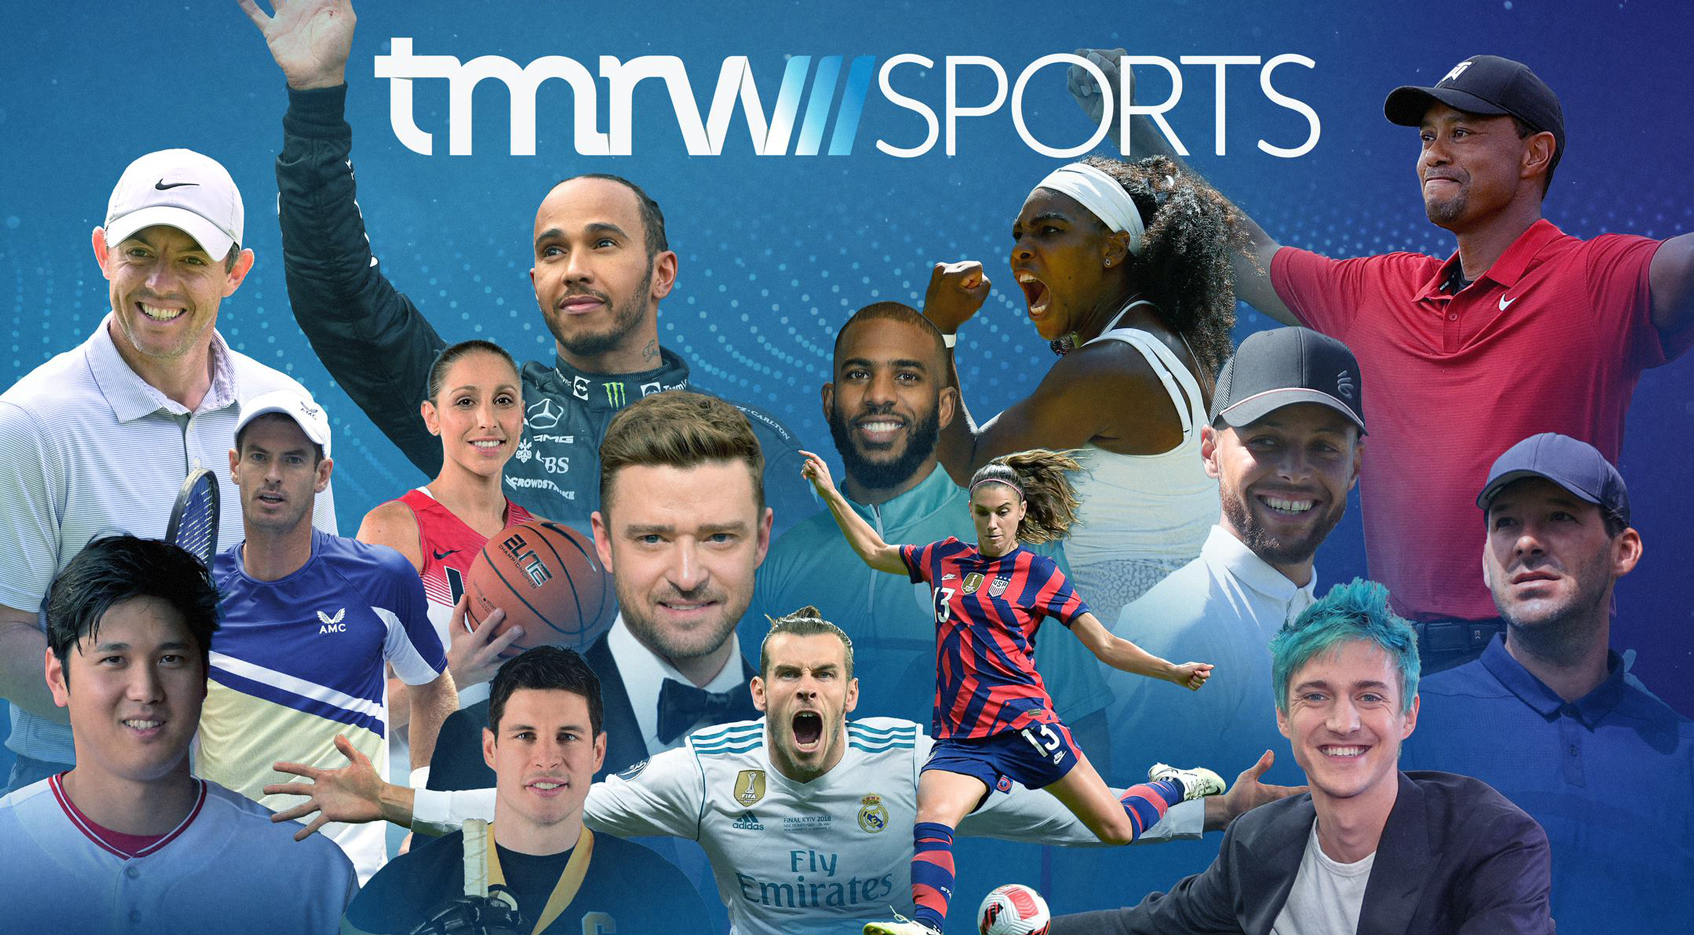 TMRW Sports adds all-star investors